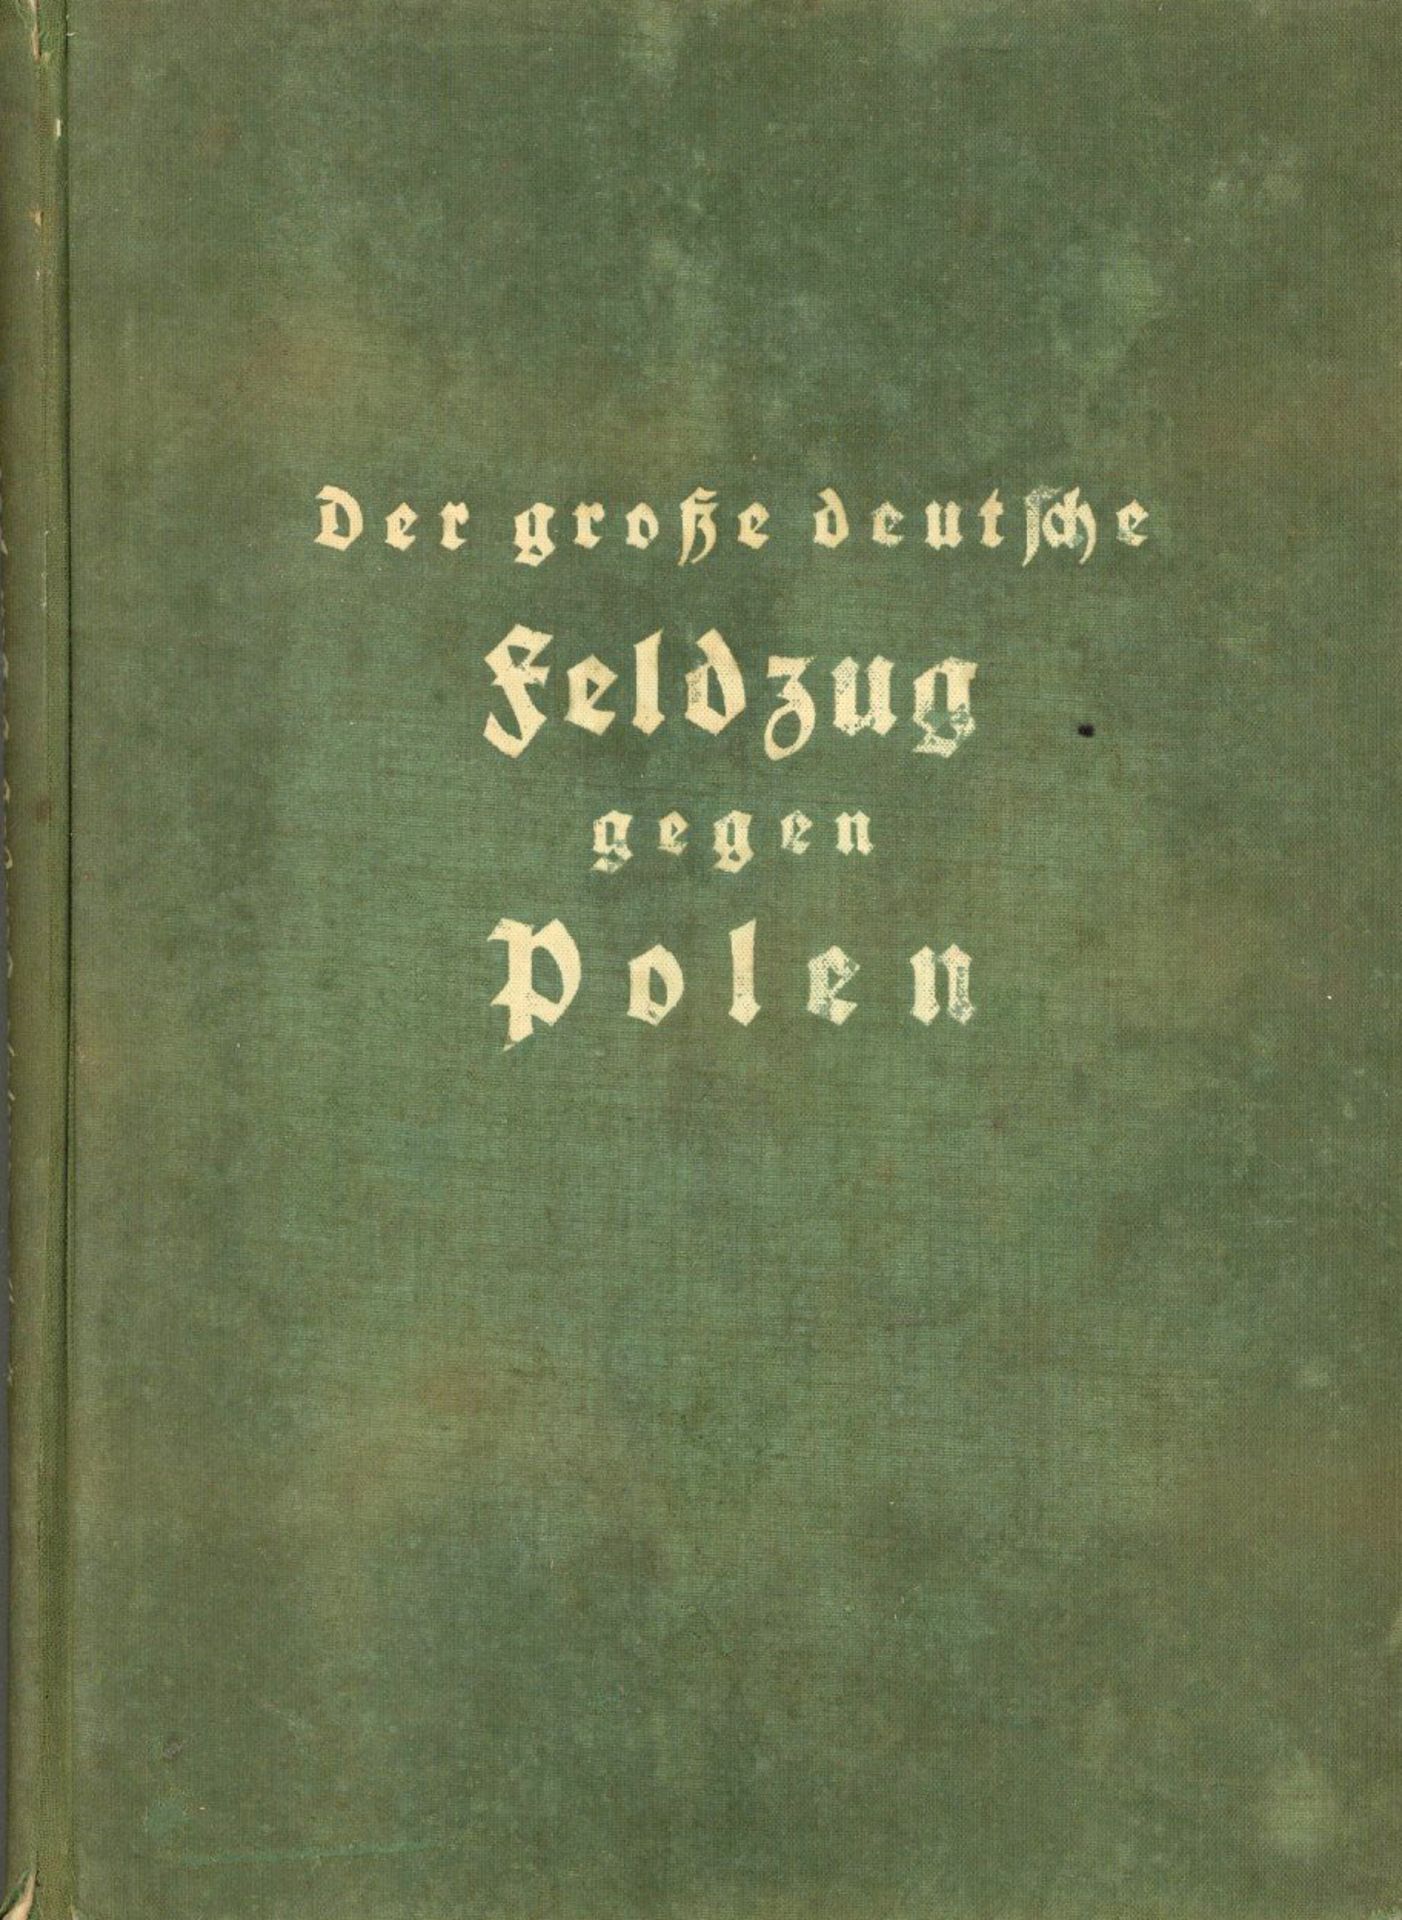 Buch WK II Der Grosse Deutsche Feldzug Gegen Polen von Prof. Hoffmann, Heinrich 1939, Verlag Göth